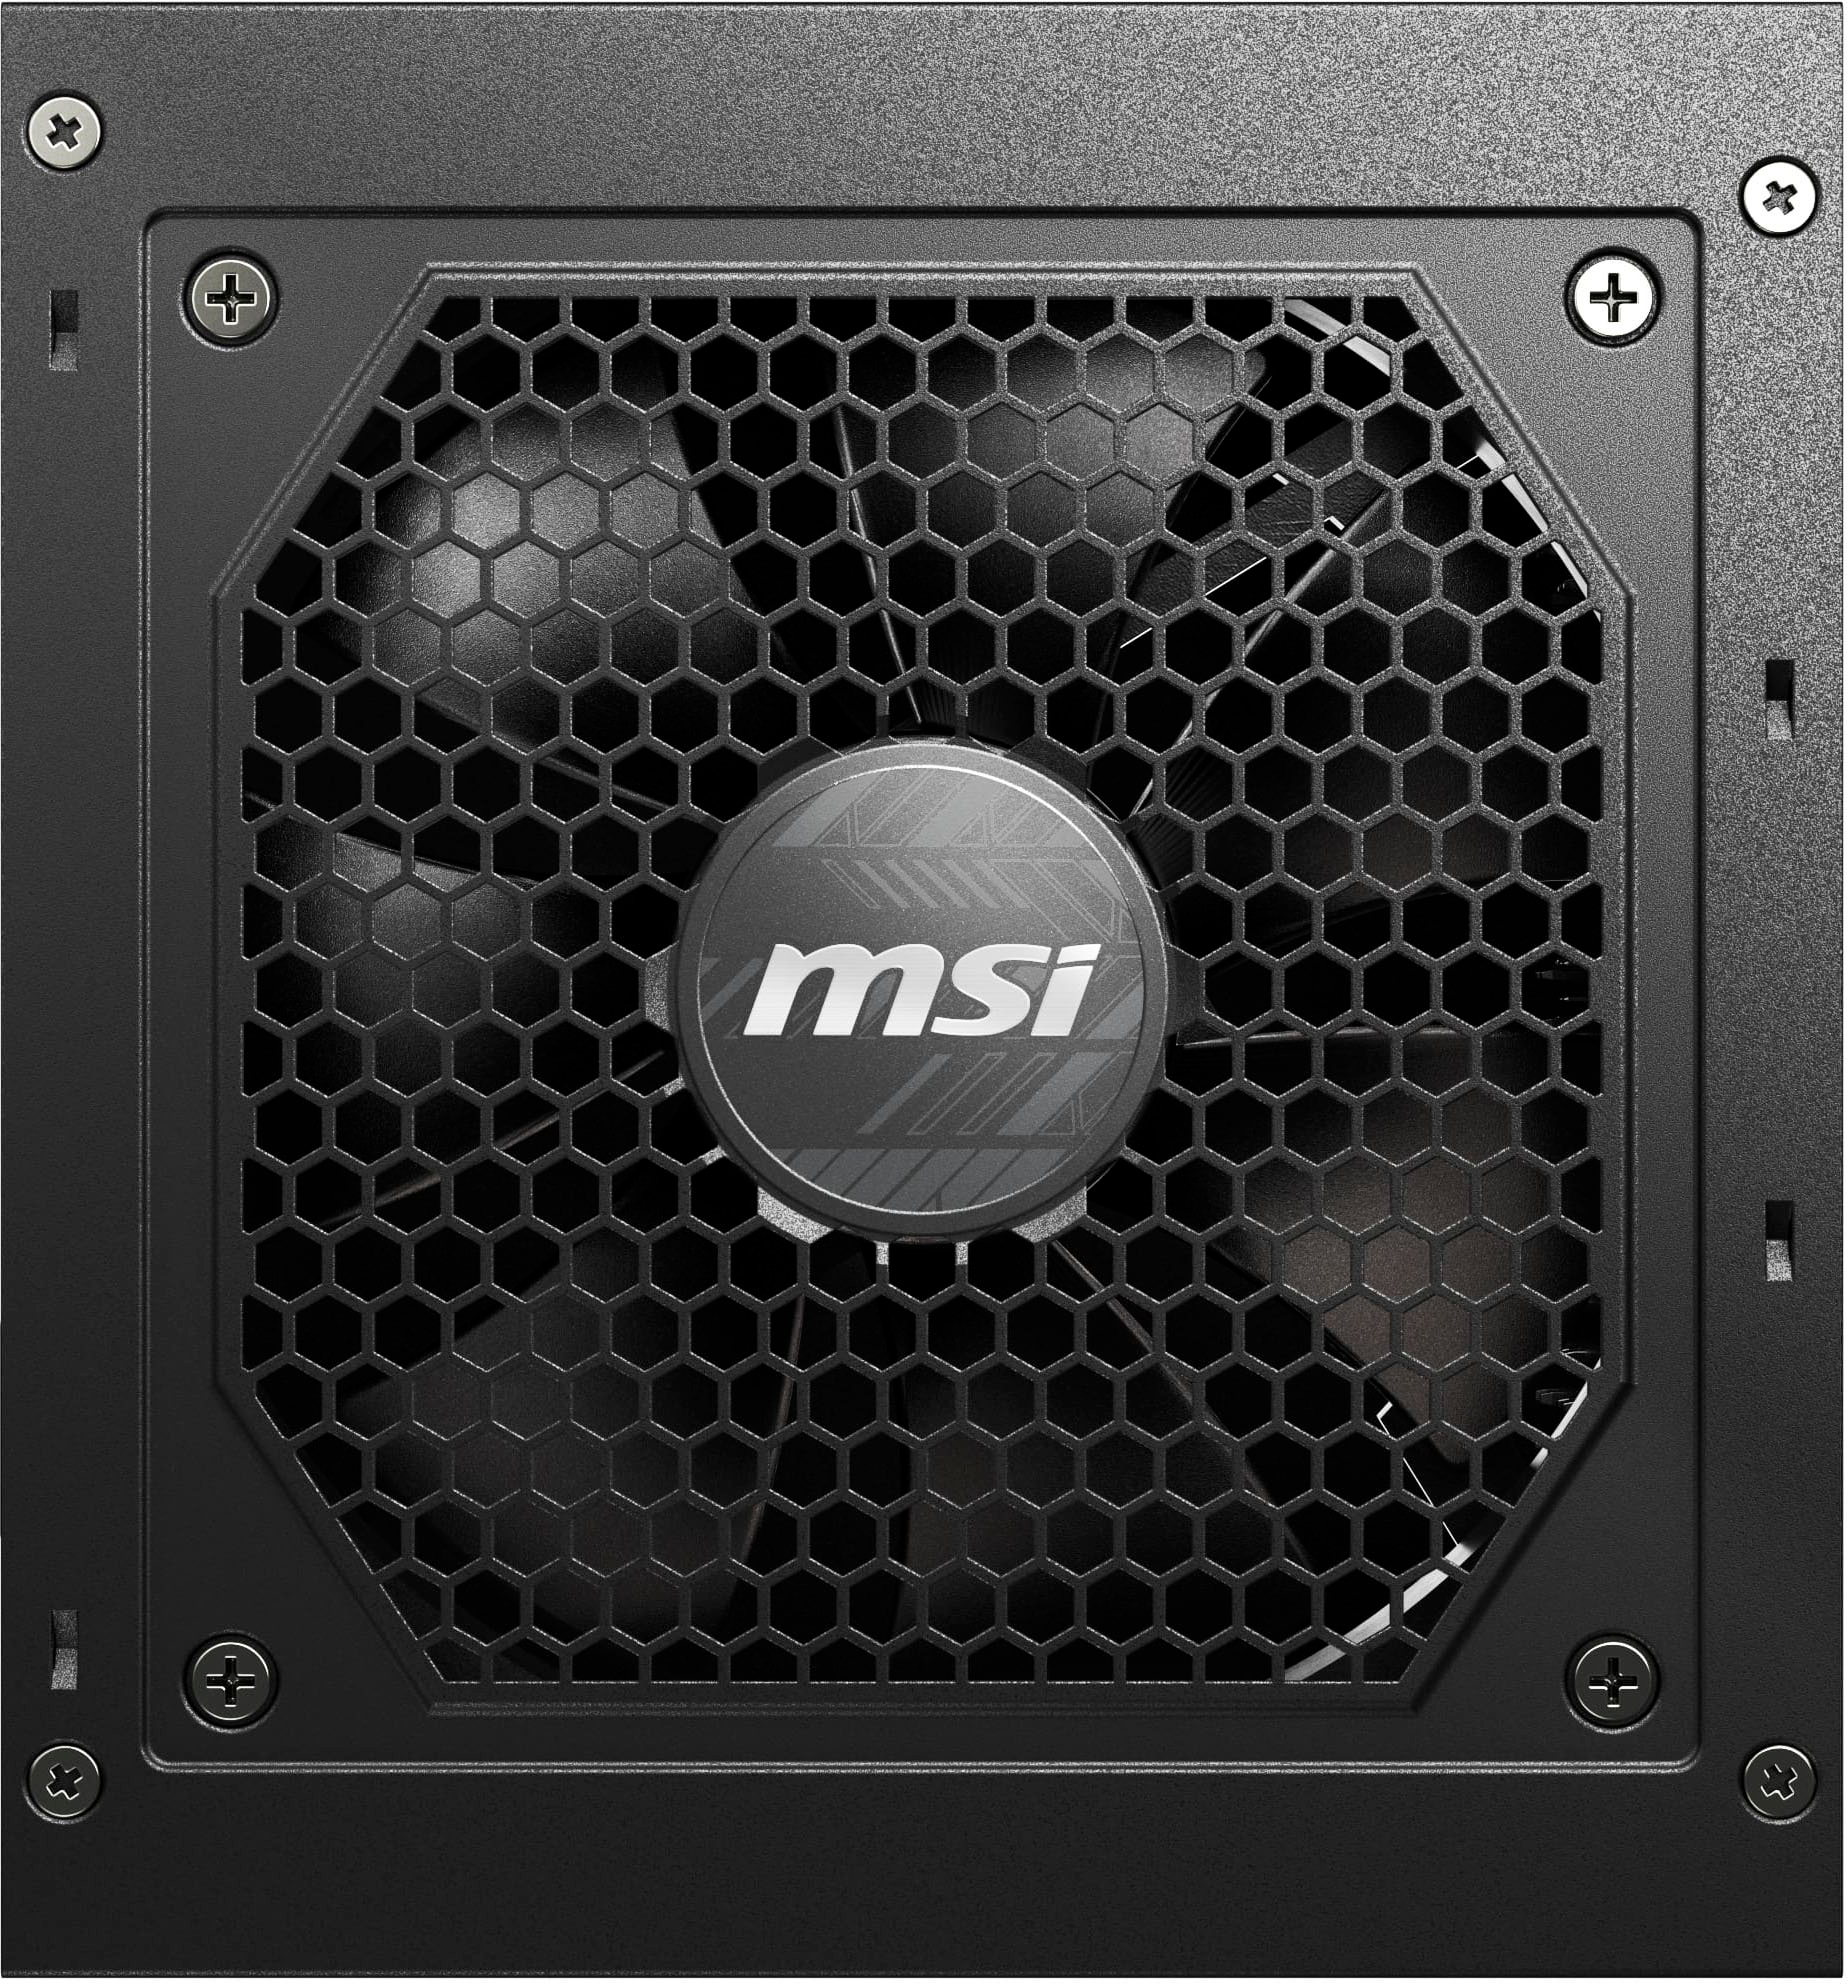 MSI MAG A850GL PCIE5 850W